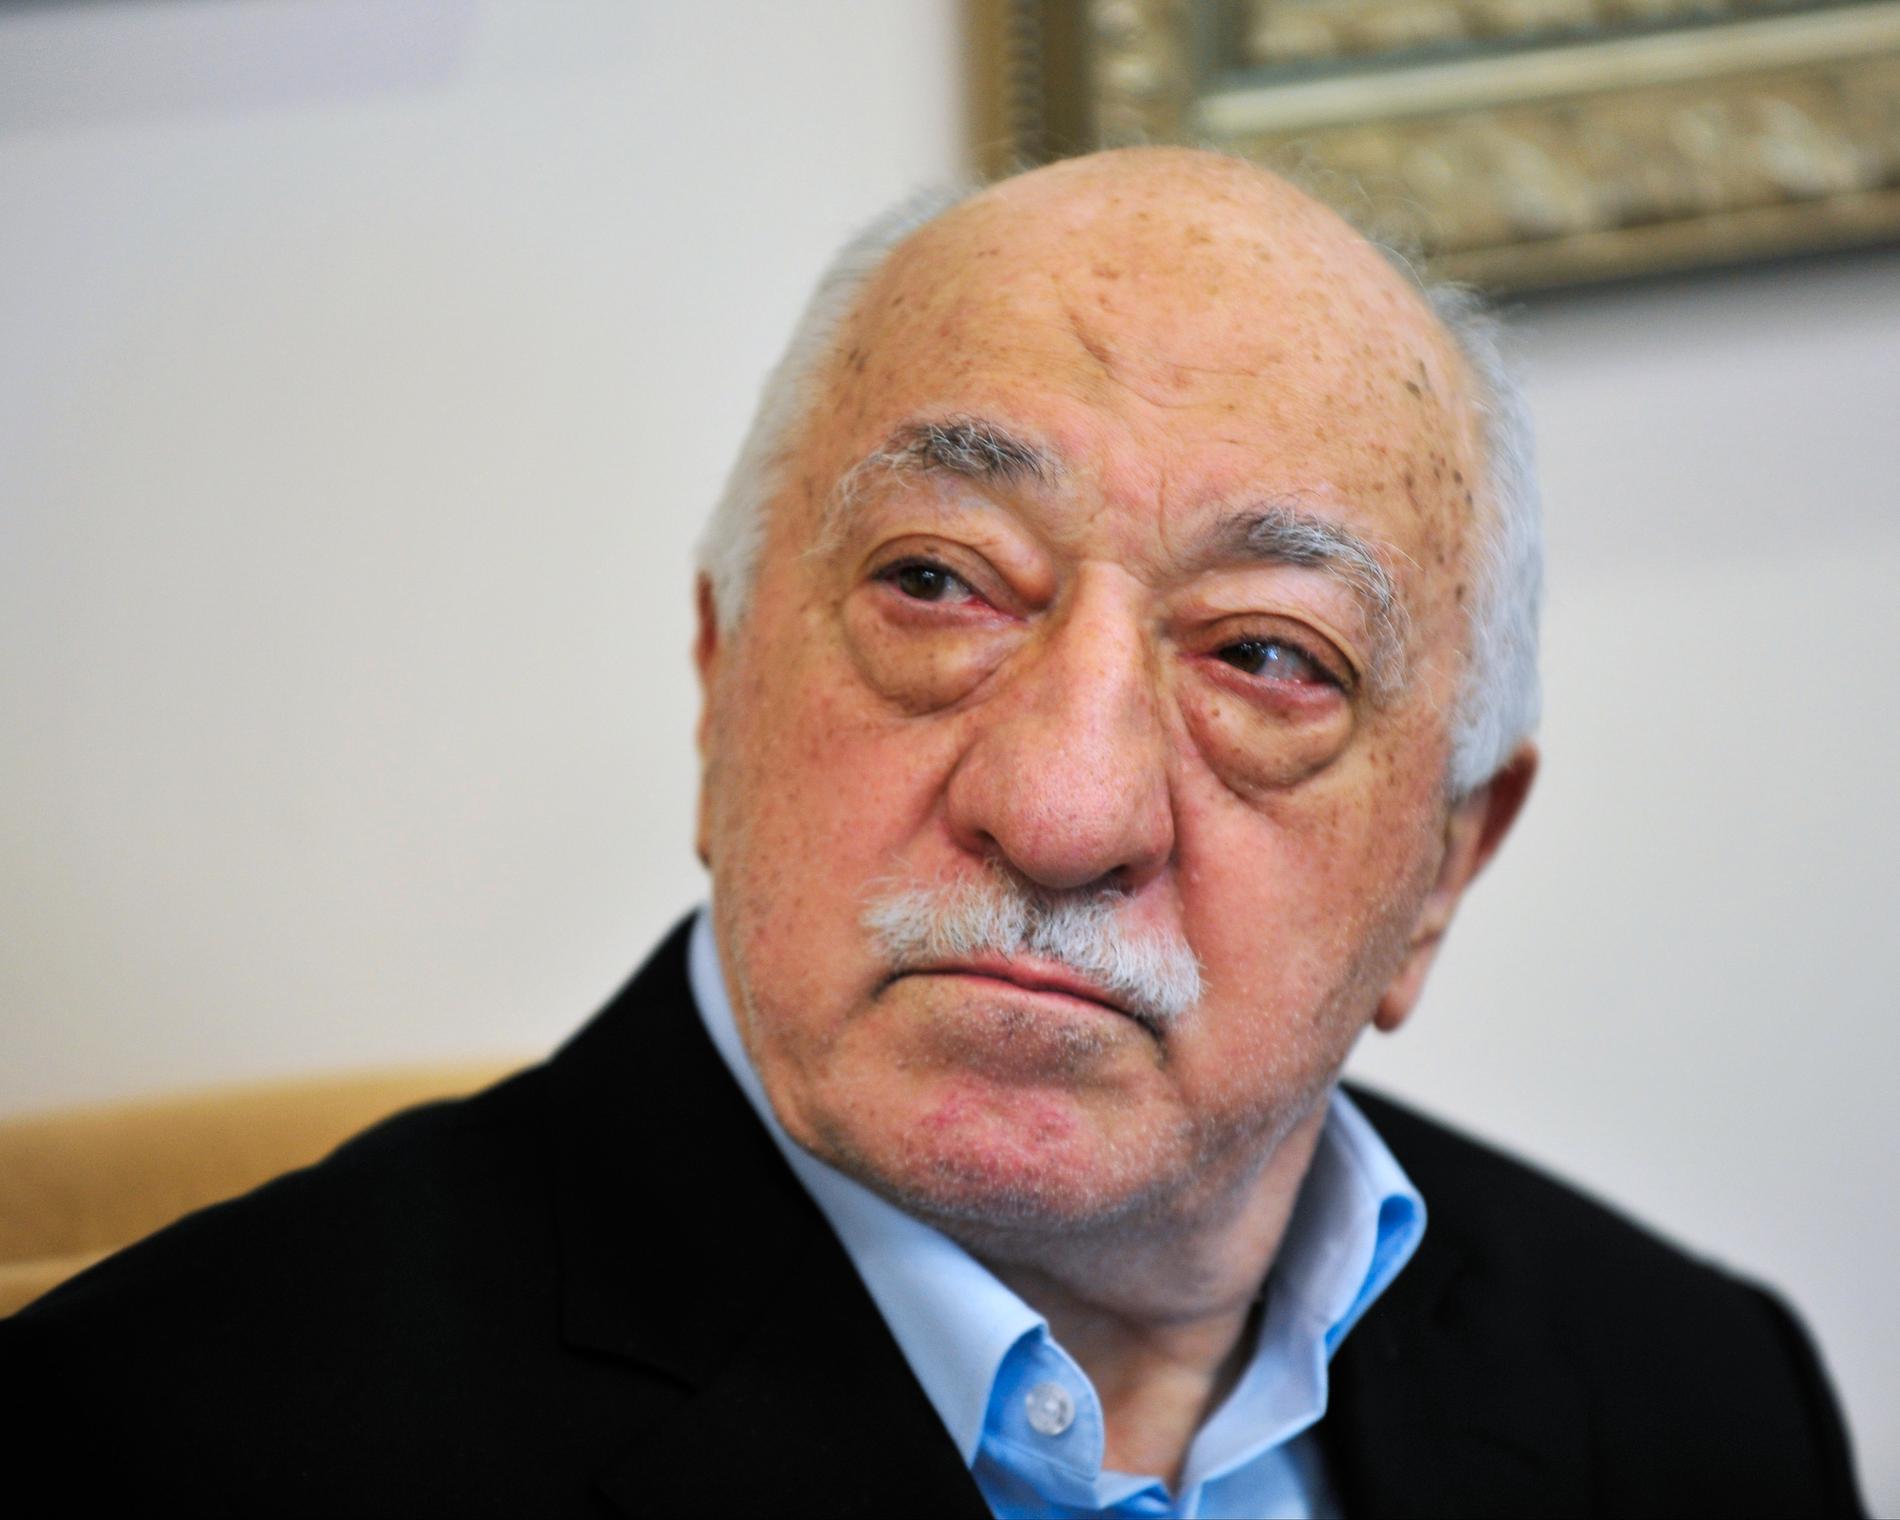 Den turkiske predikanten Fethullah Gülen, i exil i USA, anklagas både för att ha legat bakom kuppförsöket i Turkiet 2016 och mordet på den ryske Turkietambassadören Andrej Karlov. Arkivbild.